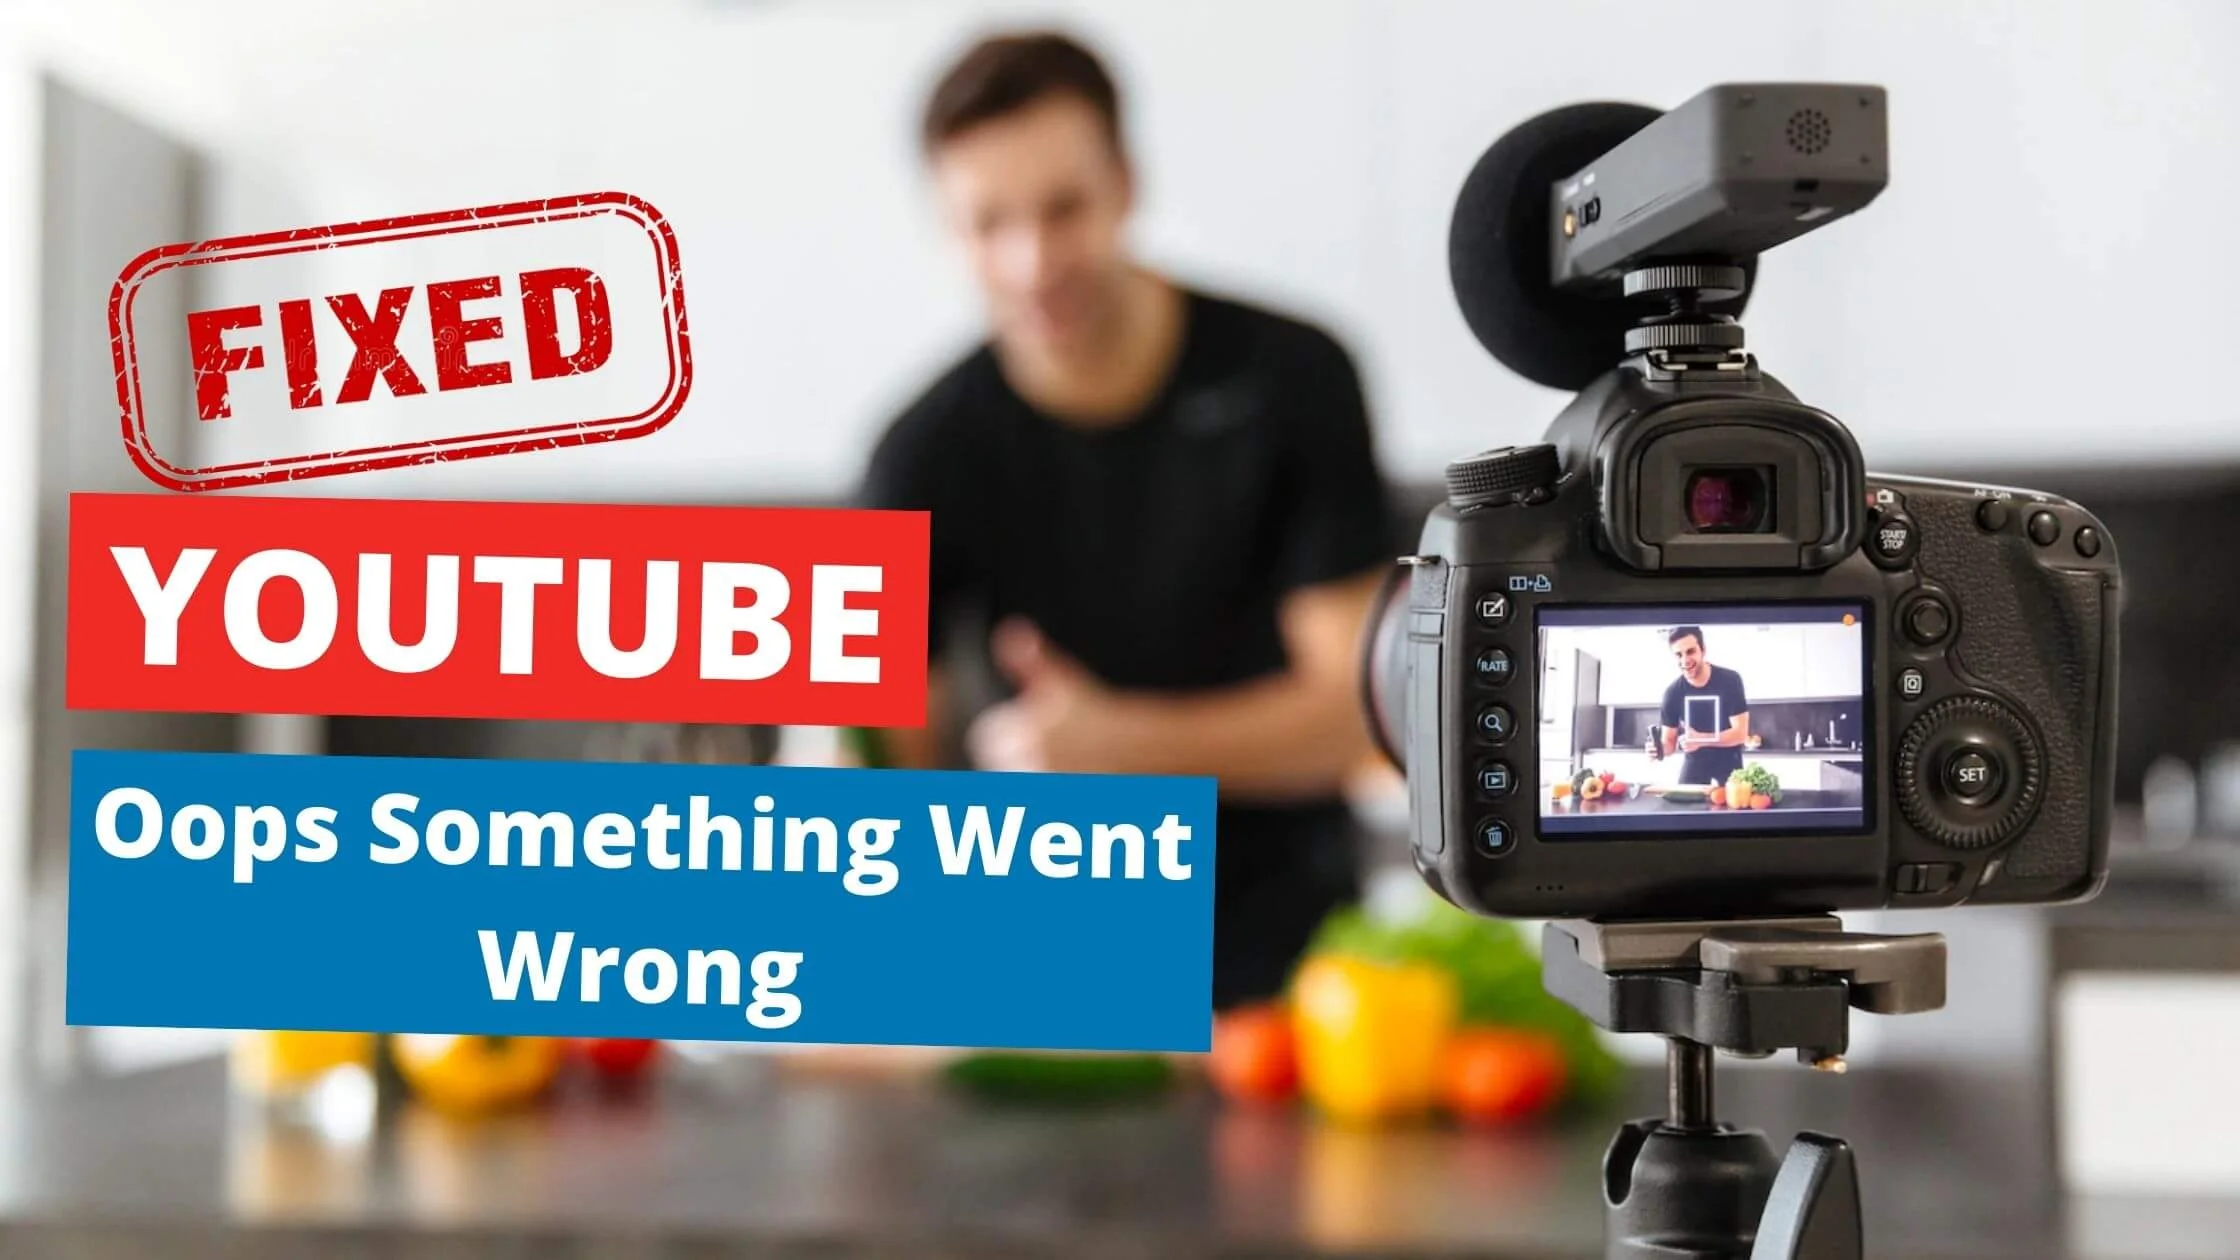 YouTube Oops Something Went Wrong